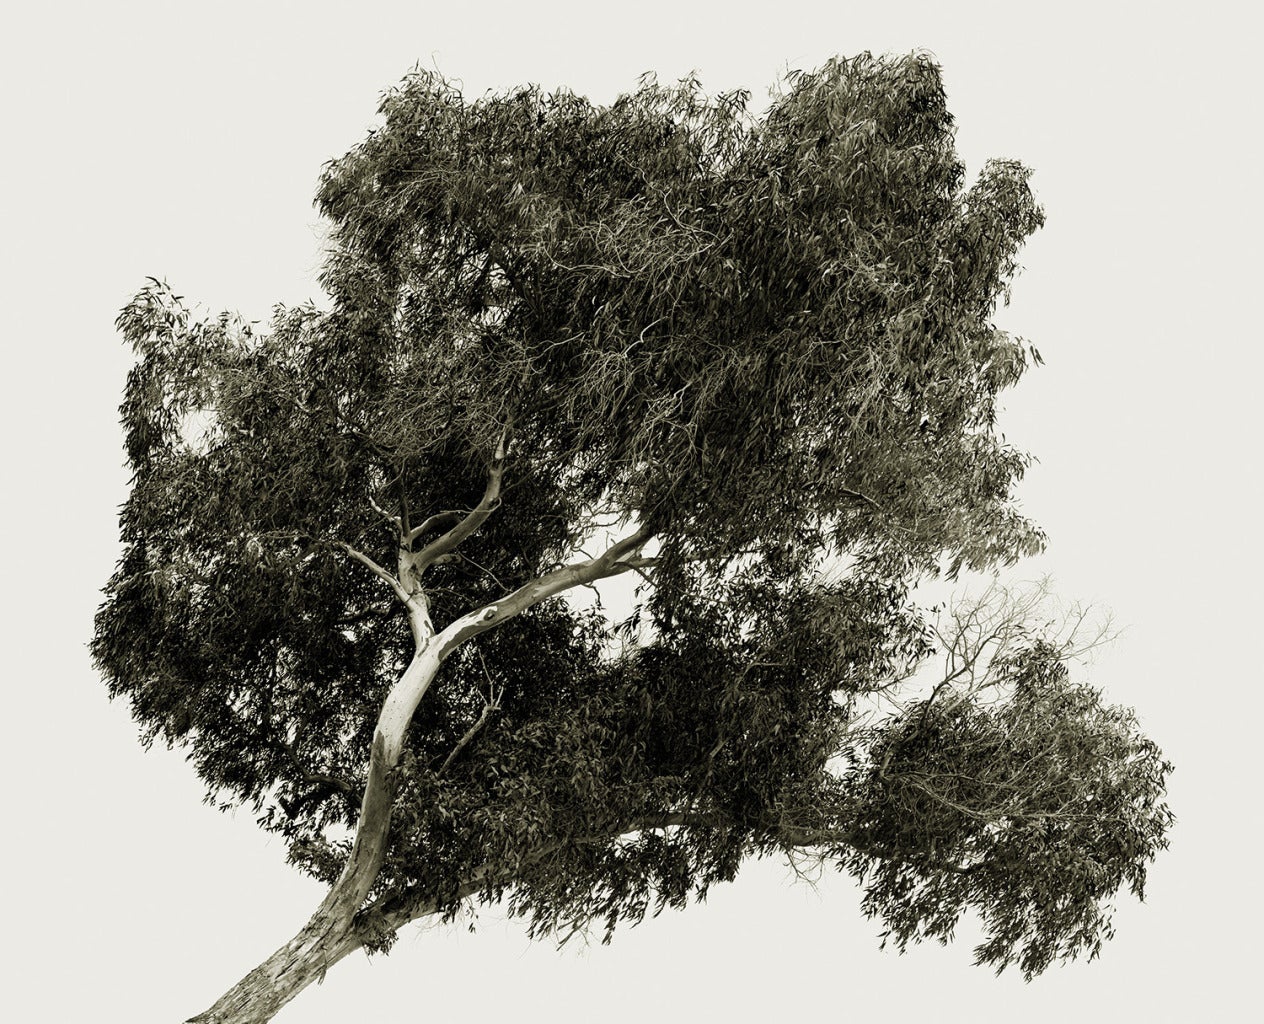 Tree Portrait 20 - Photograph by Amir Zaki